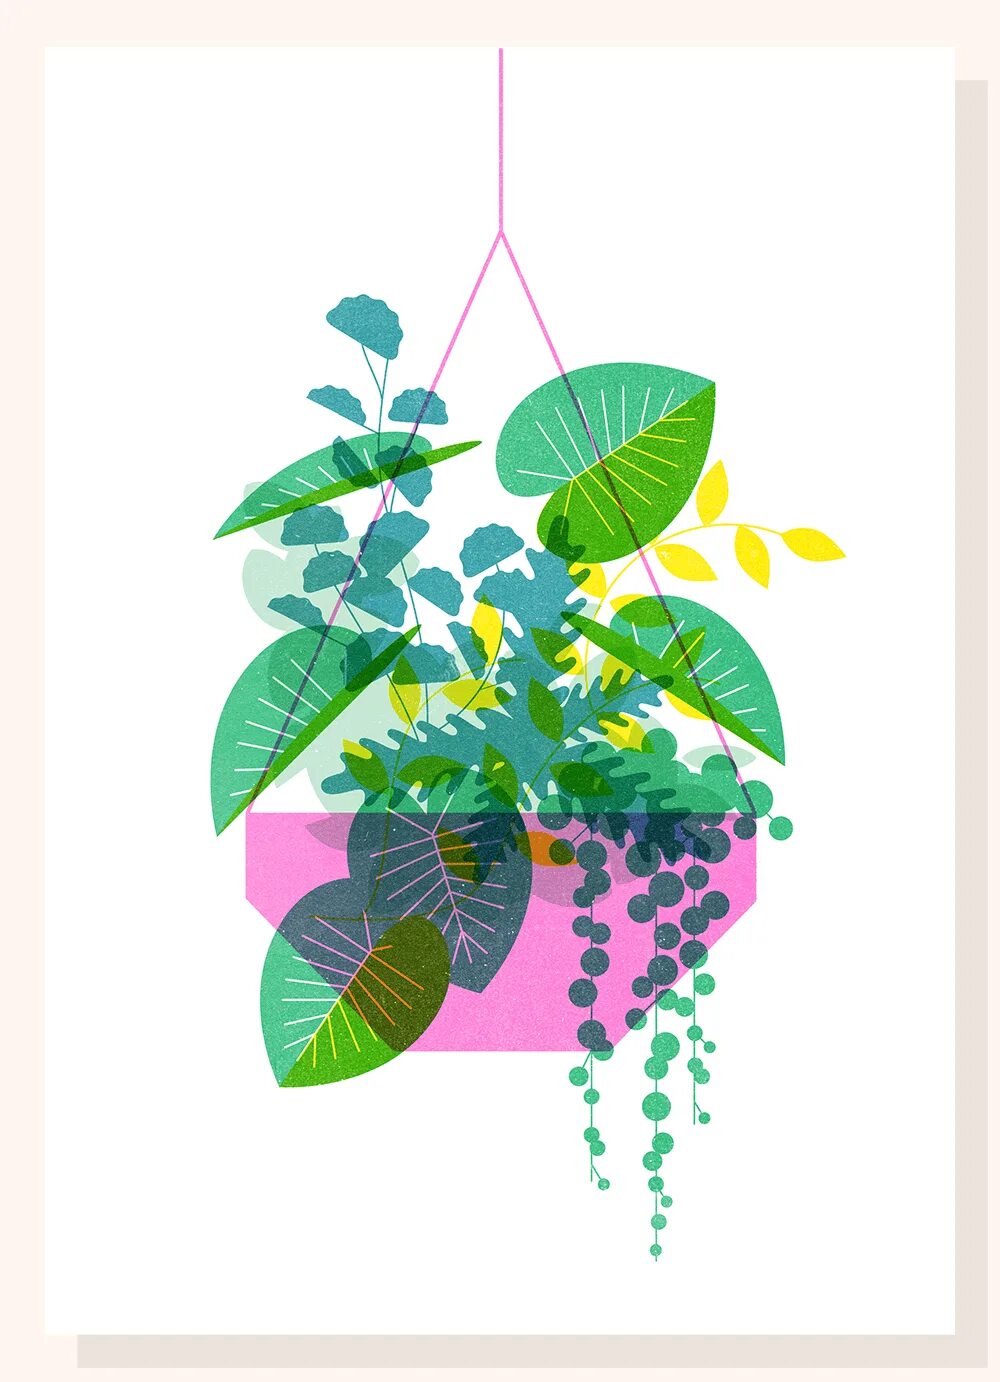 Растения дизайн графический. Растения Flat иллюстрация. Флэт иллюстрации цветов. Комнатные растения плоский дизайн. Plant series